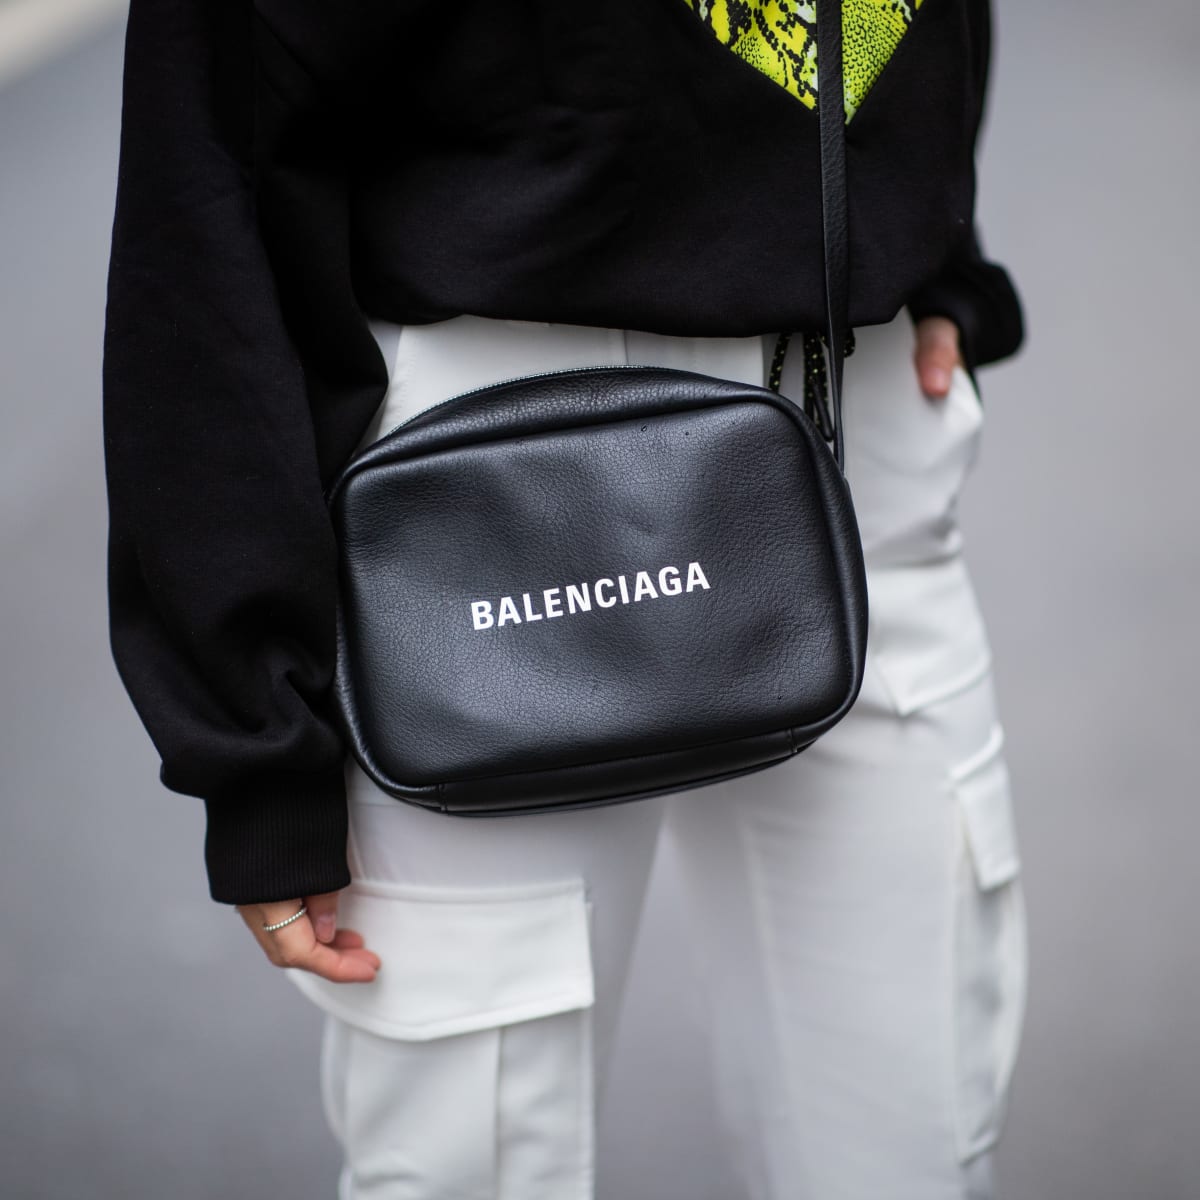 Balenciaga Handbags  Mercari